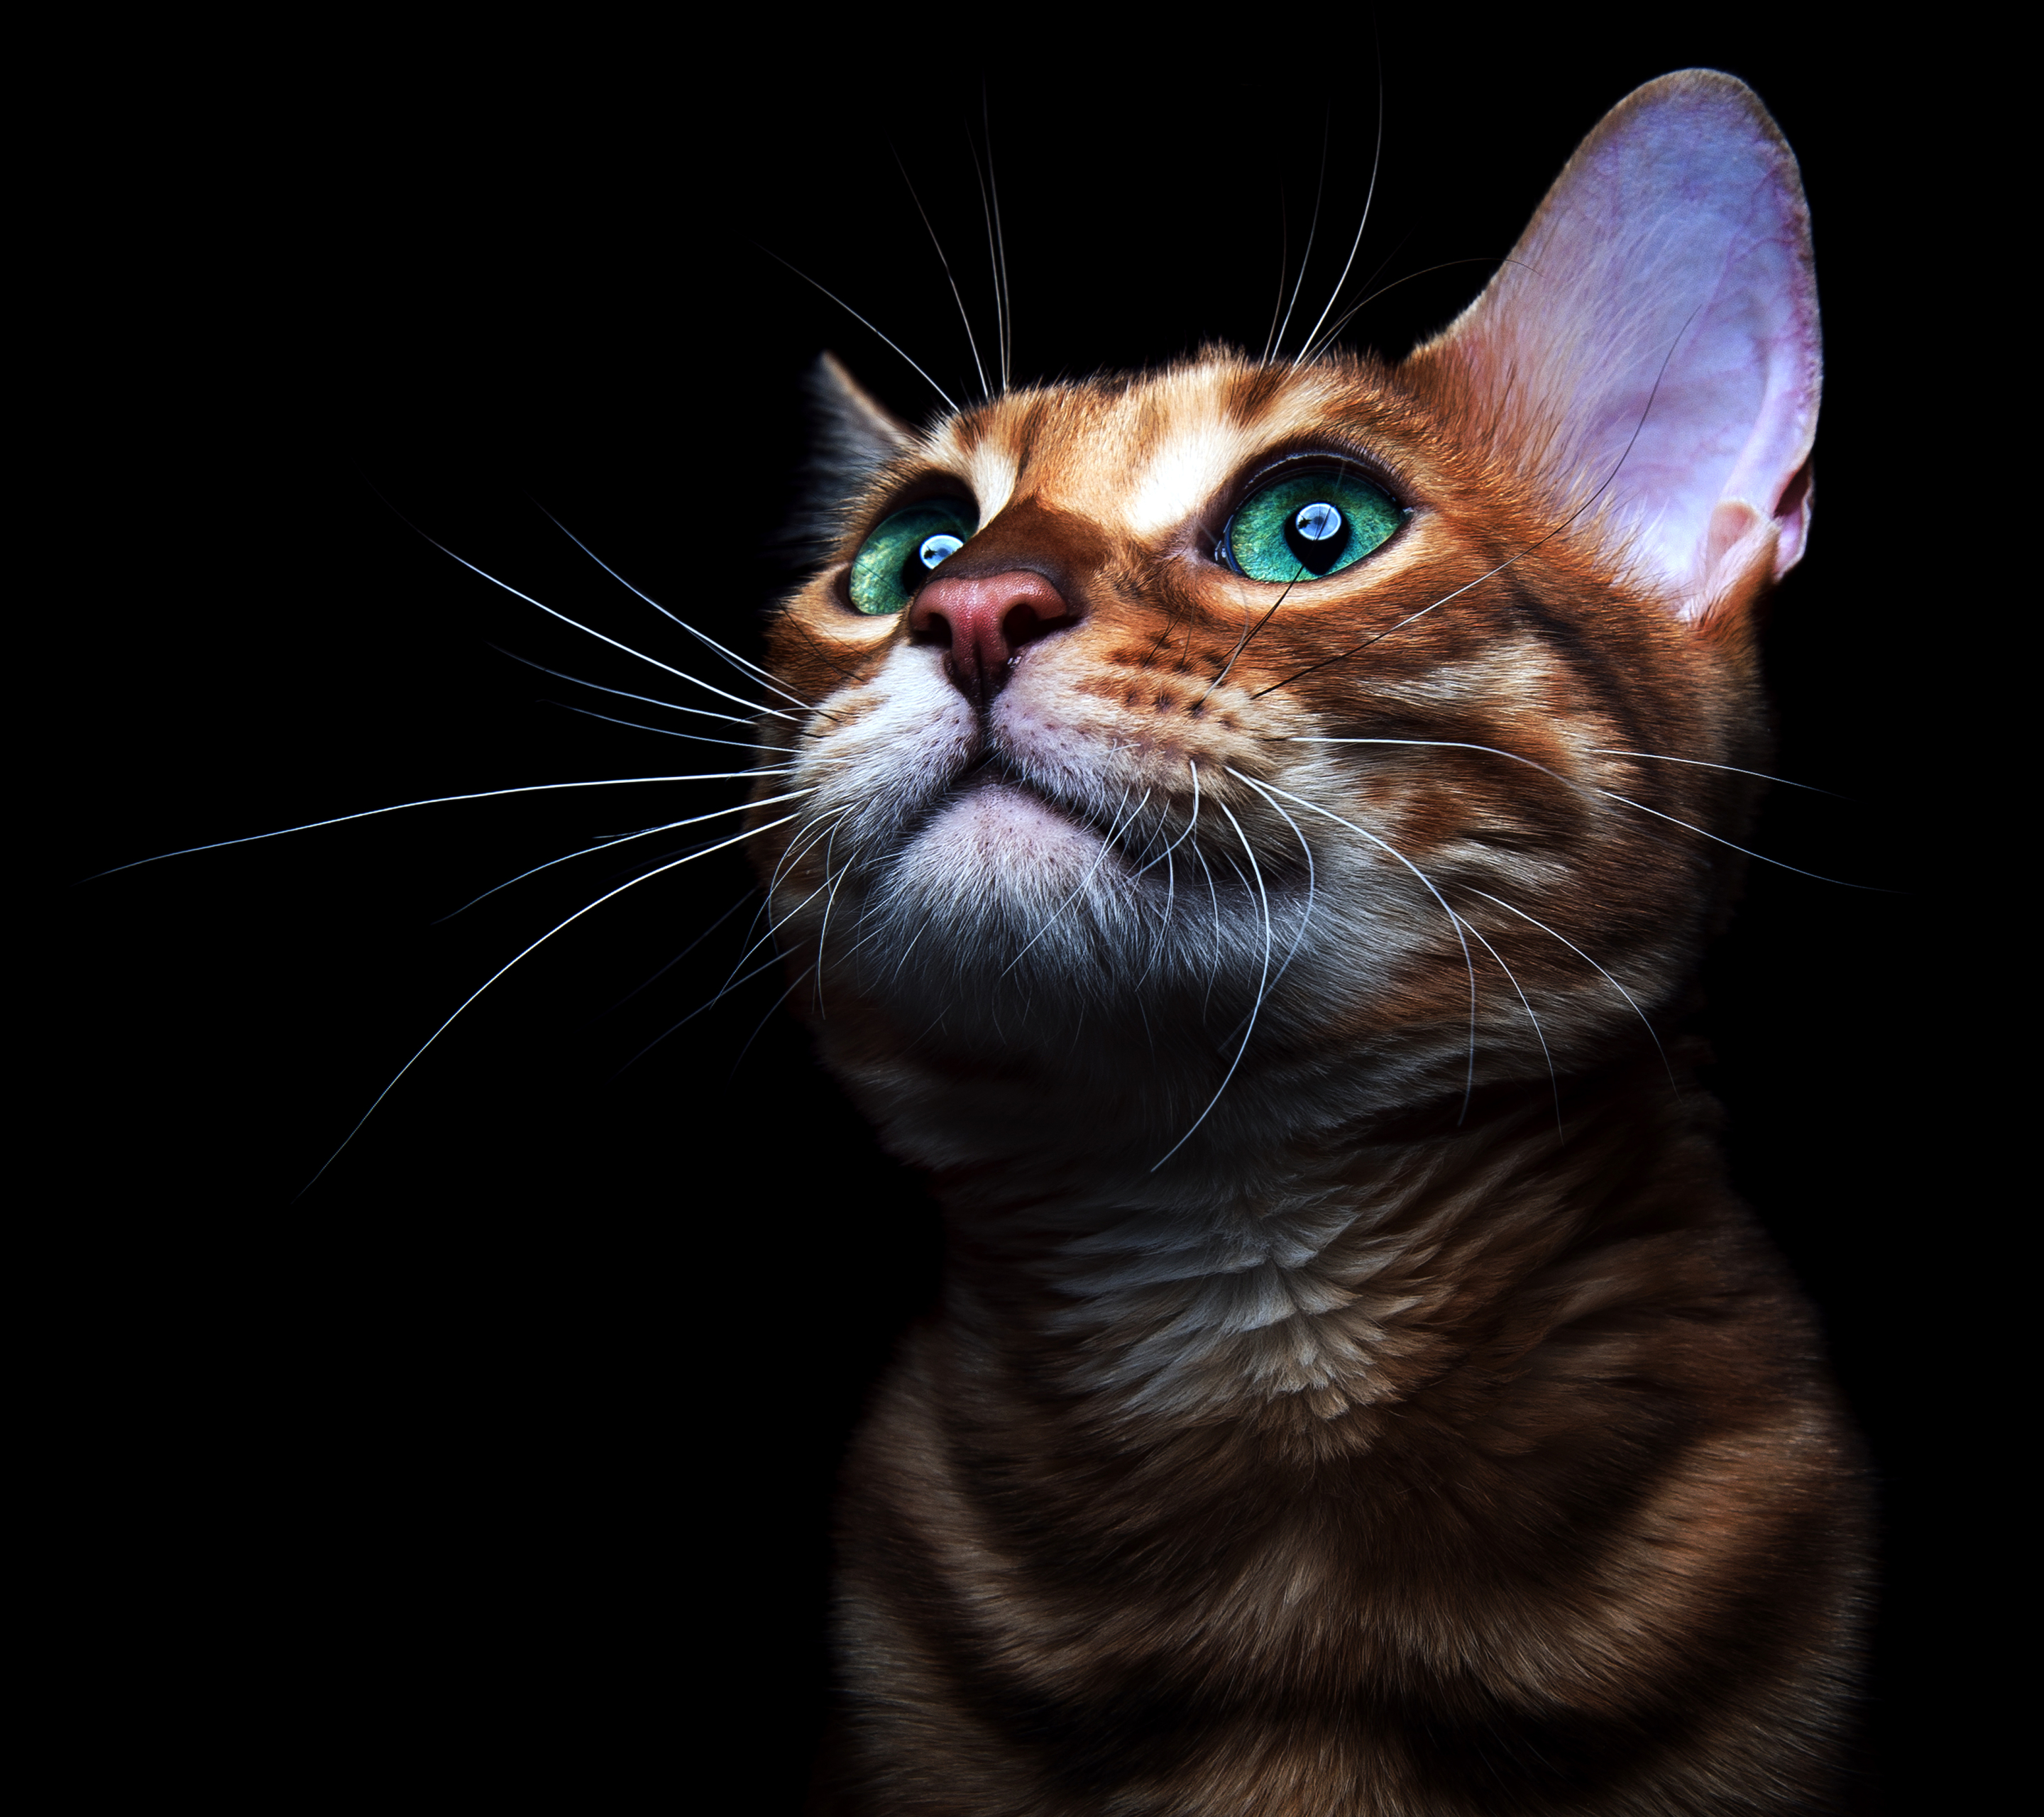 Descarga gratuita de fondo de pantalla para móvil de Animales, Gatos, Gato, Gatito, Ojos Verdes.